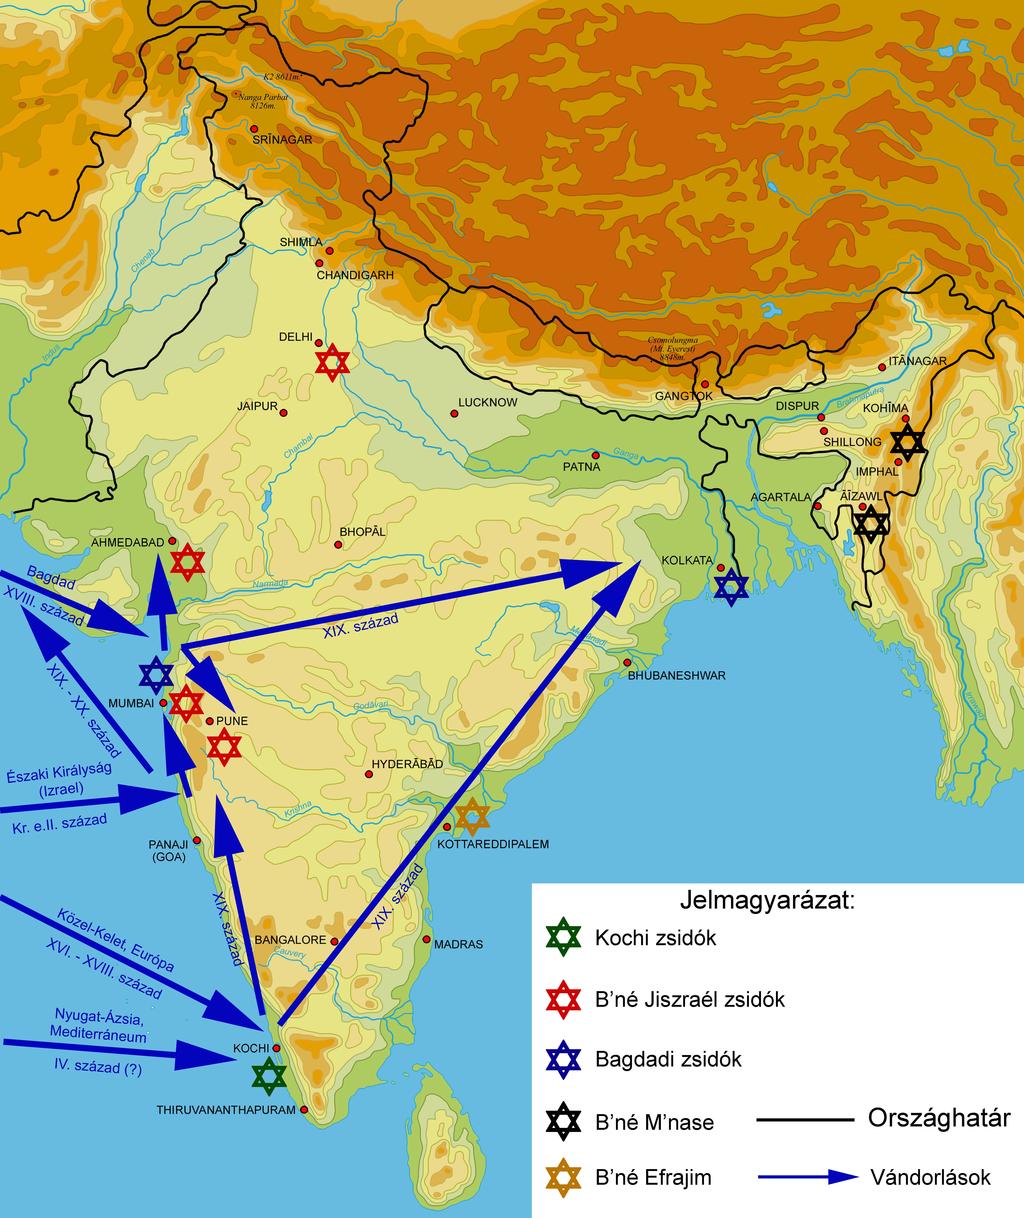 Zagyi Nándor: A judaizmus múltja és jelene Indiában Modern Geográfia, 2009. 4. szám, http://www.moderngeografia.